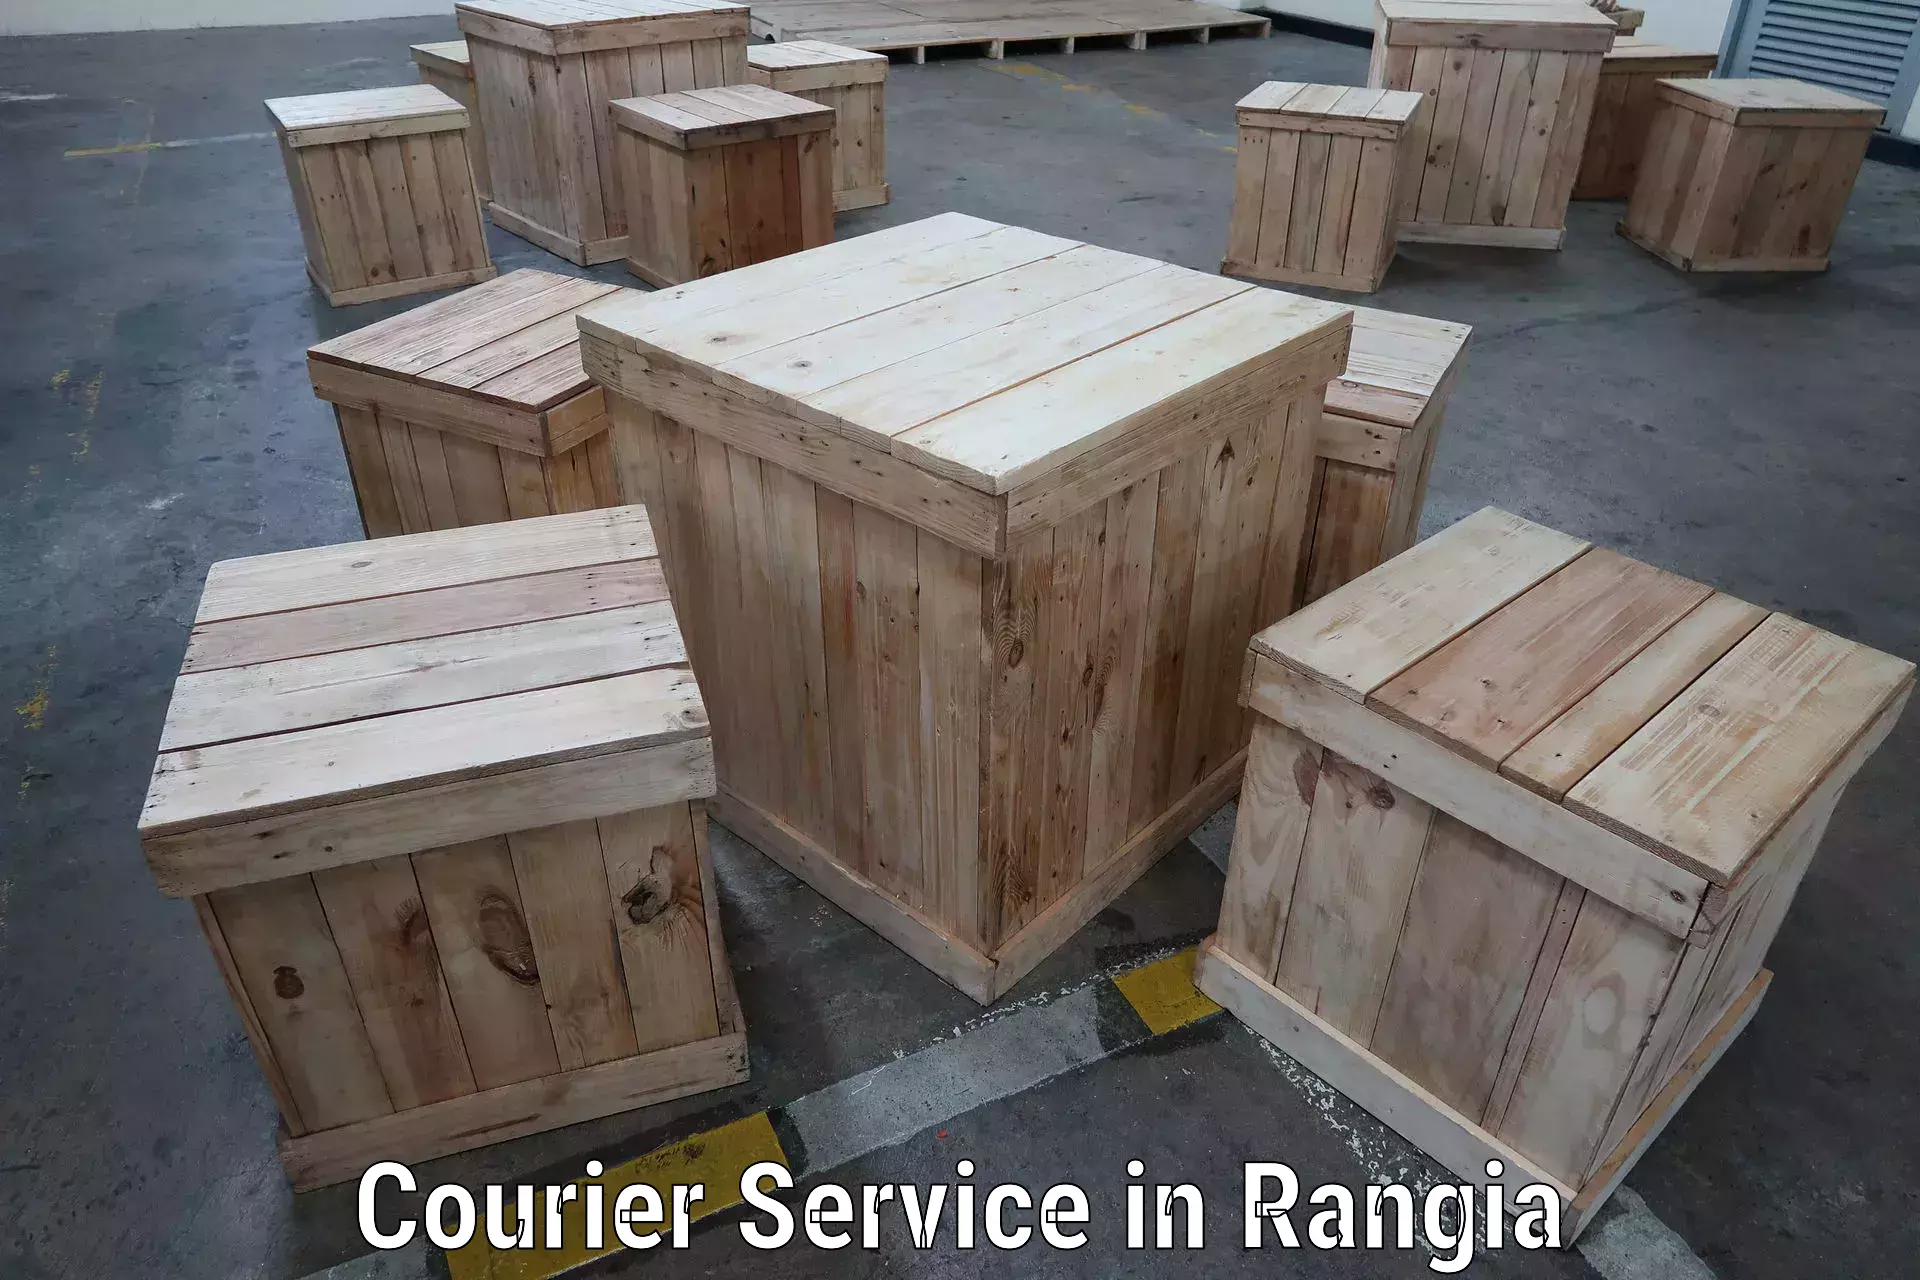 Door-to-door shipment in Rangia